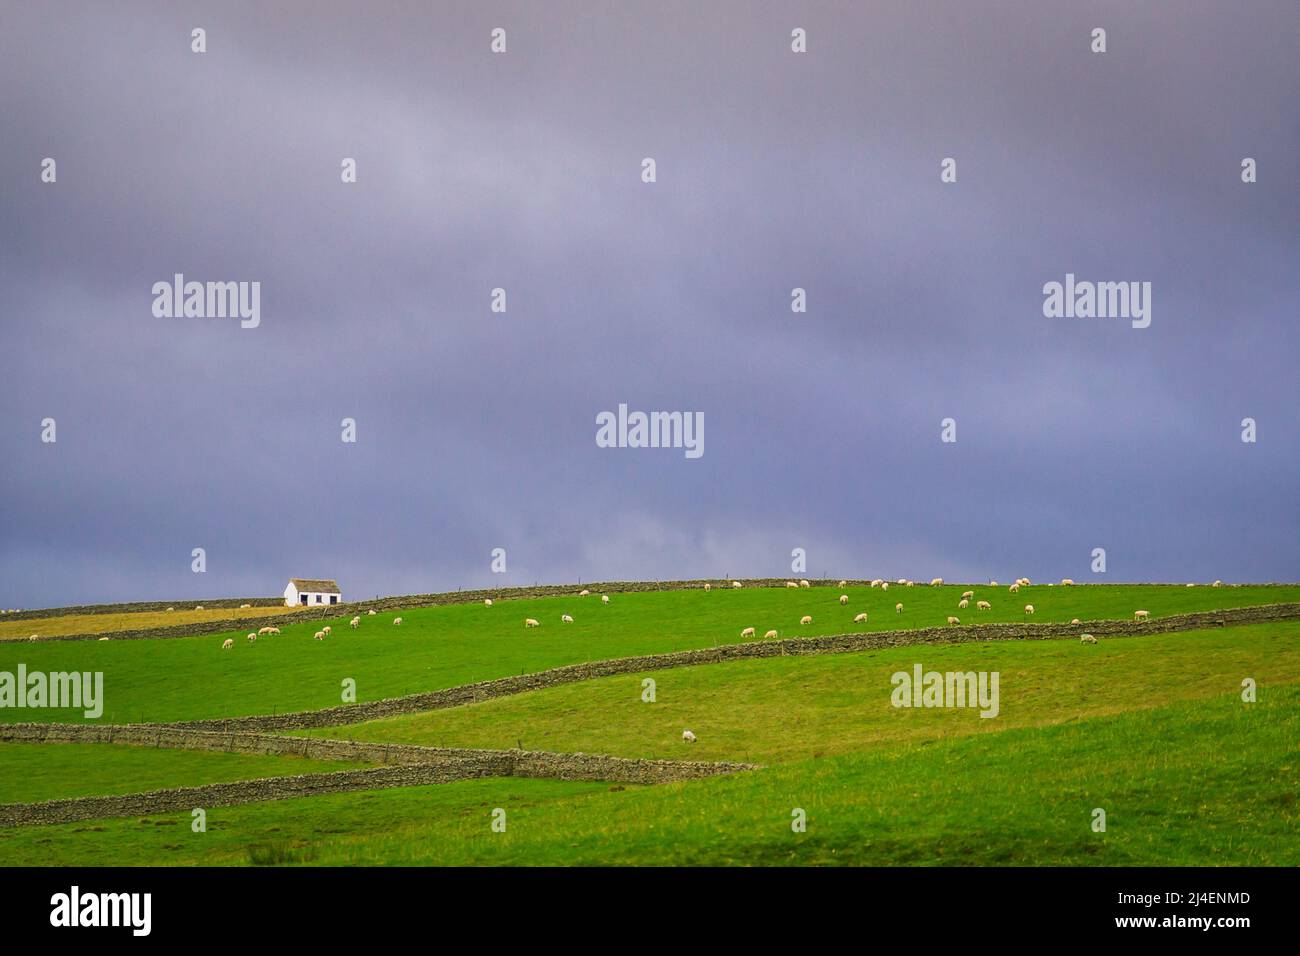 Die Landschaft der Northern Pennines in Upper Teesdale. Steinmauern, Schafe und Scheunen sind in der Landschaft zu sehen. Stockfoto